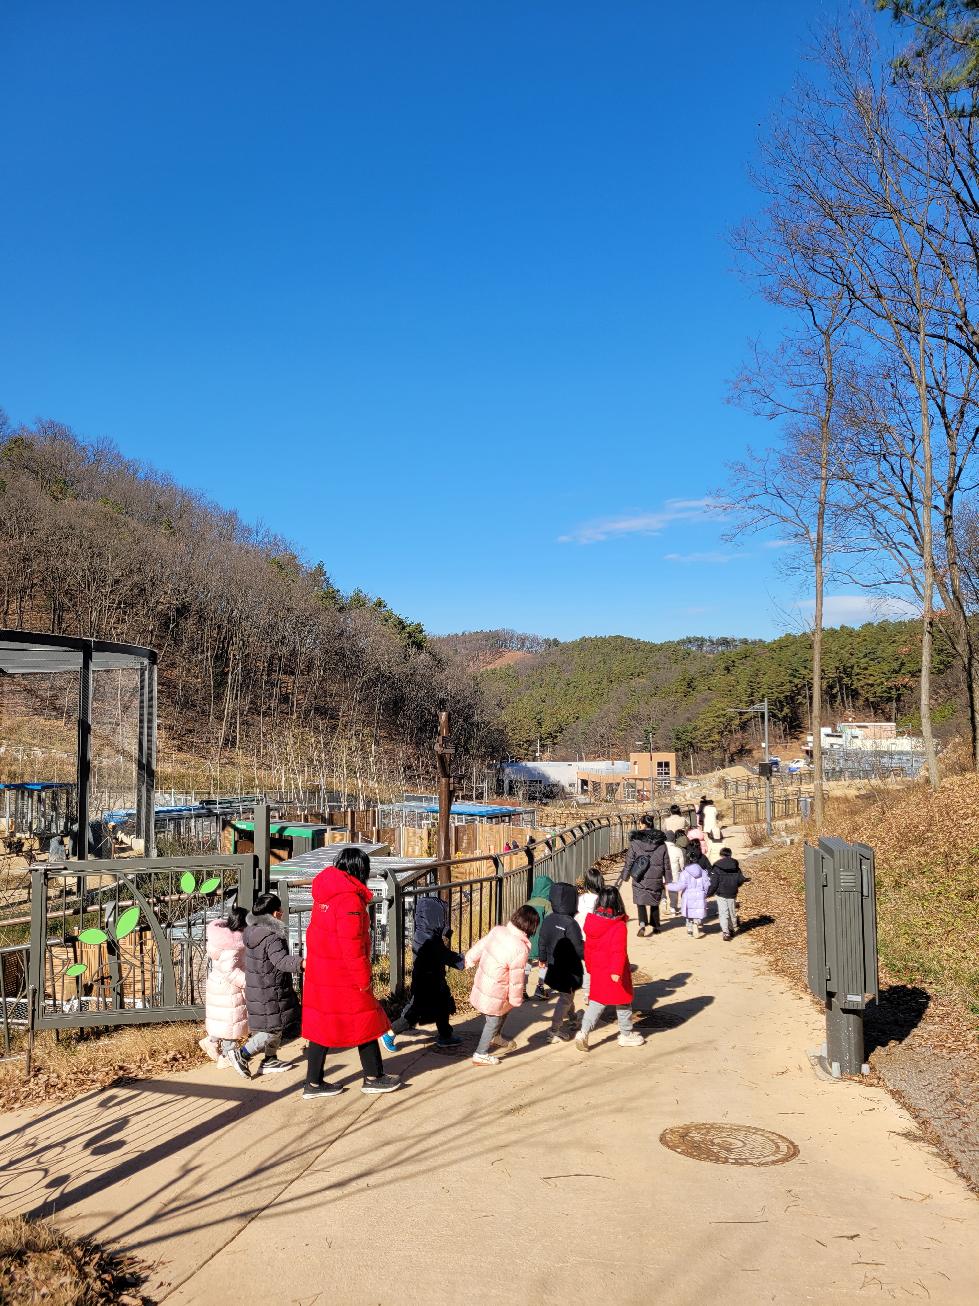 경기도, 야생동물 생태보전교육에 올해 3,545명 참가. 생명존중의식 강